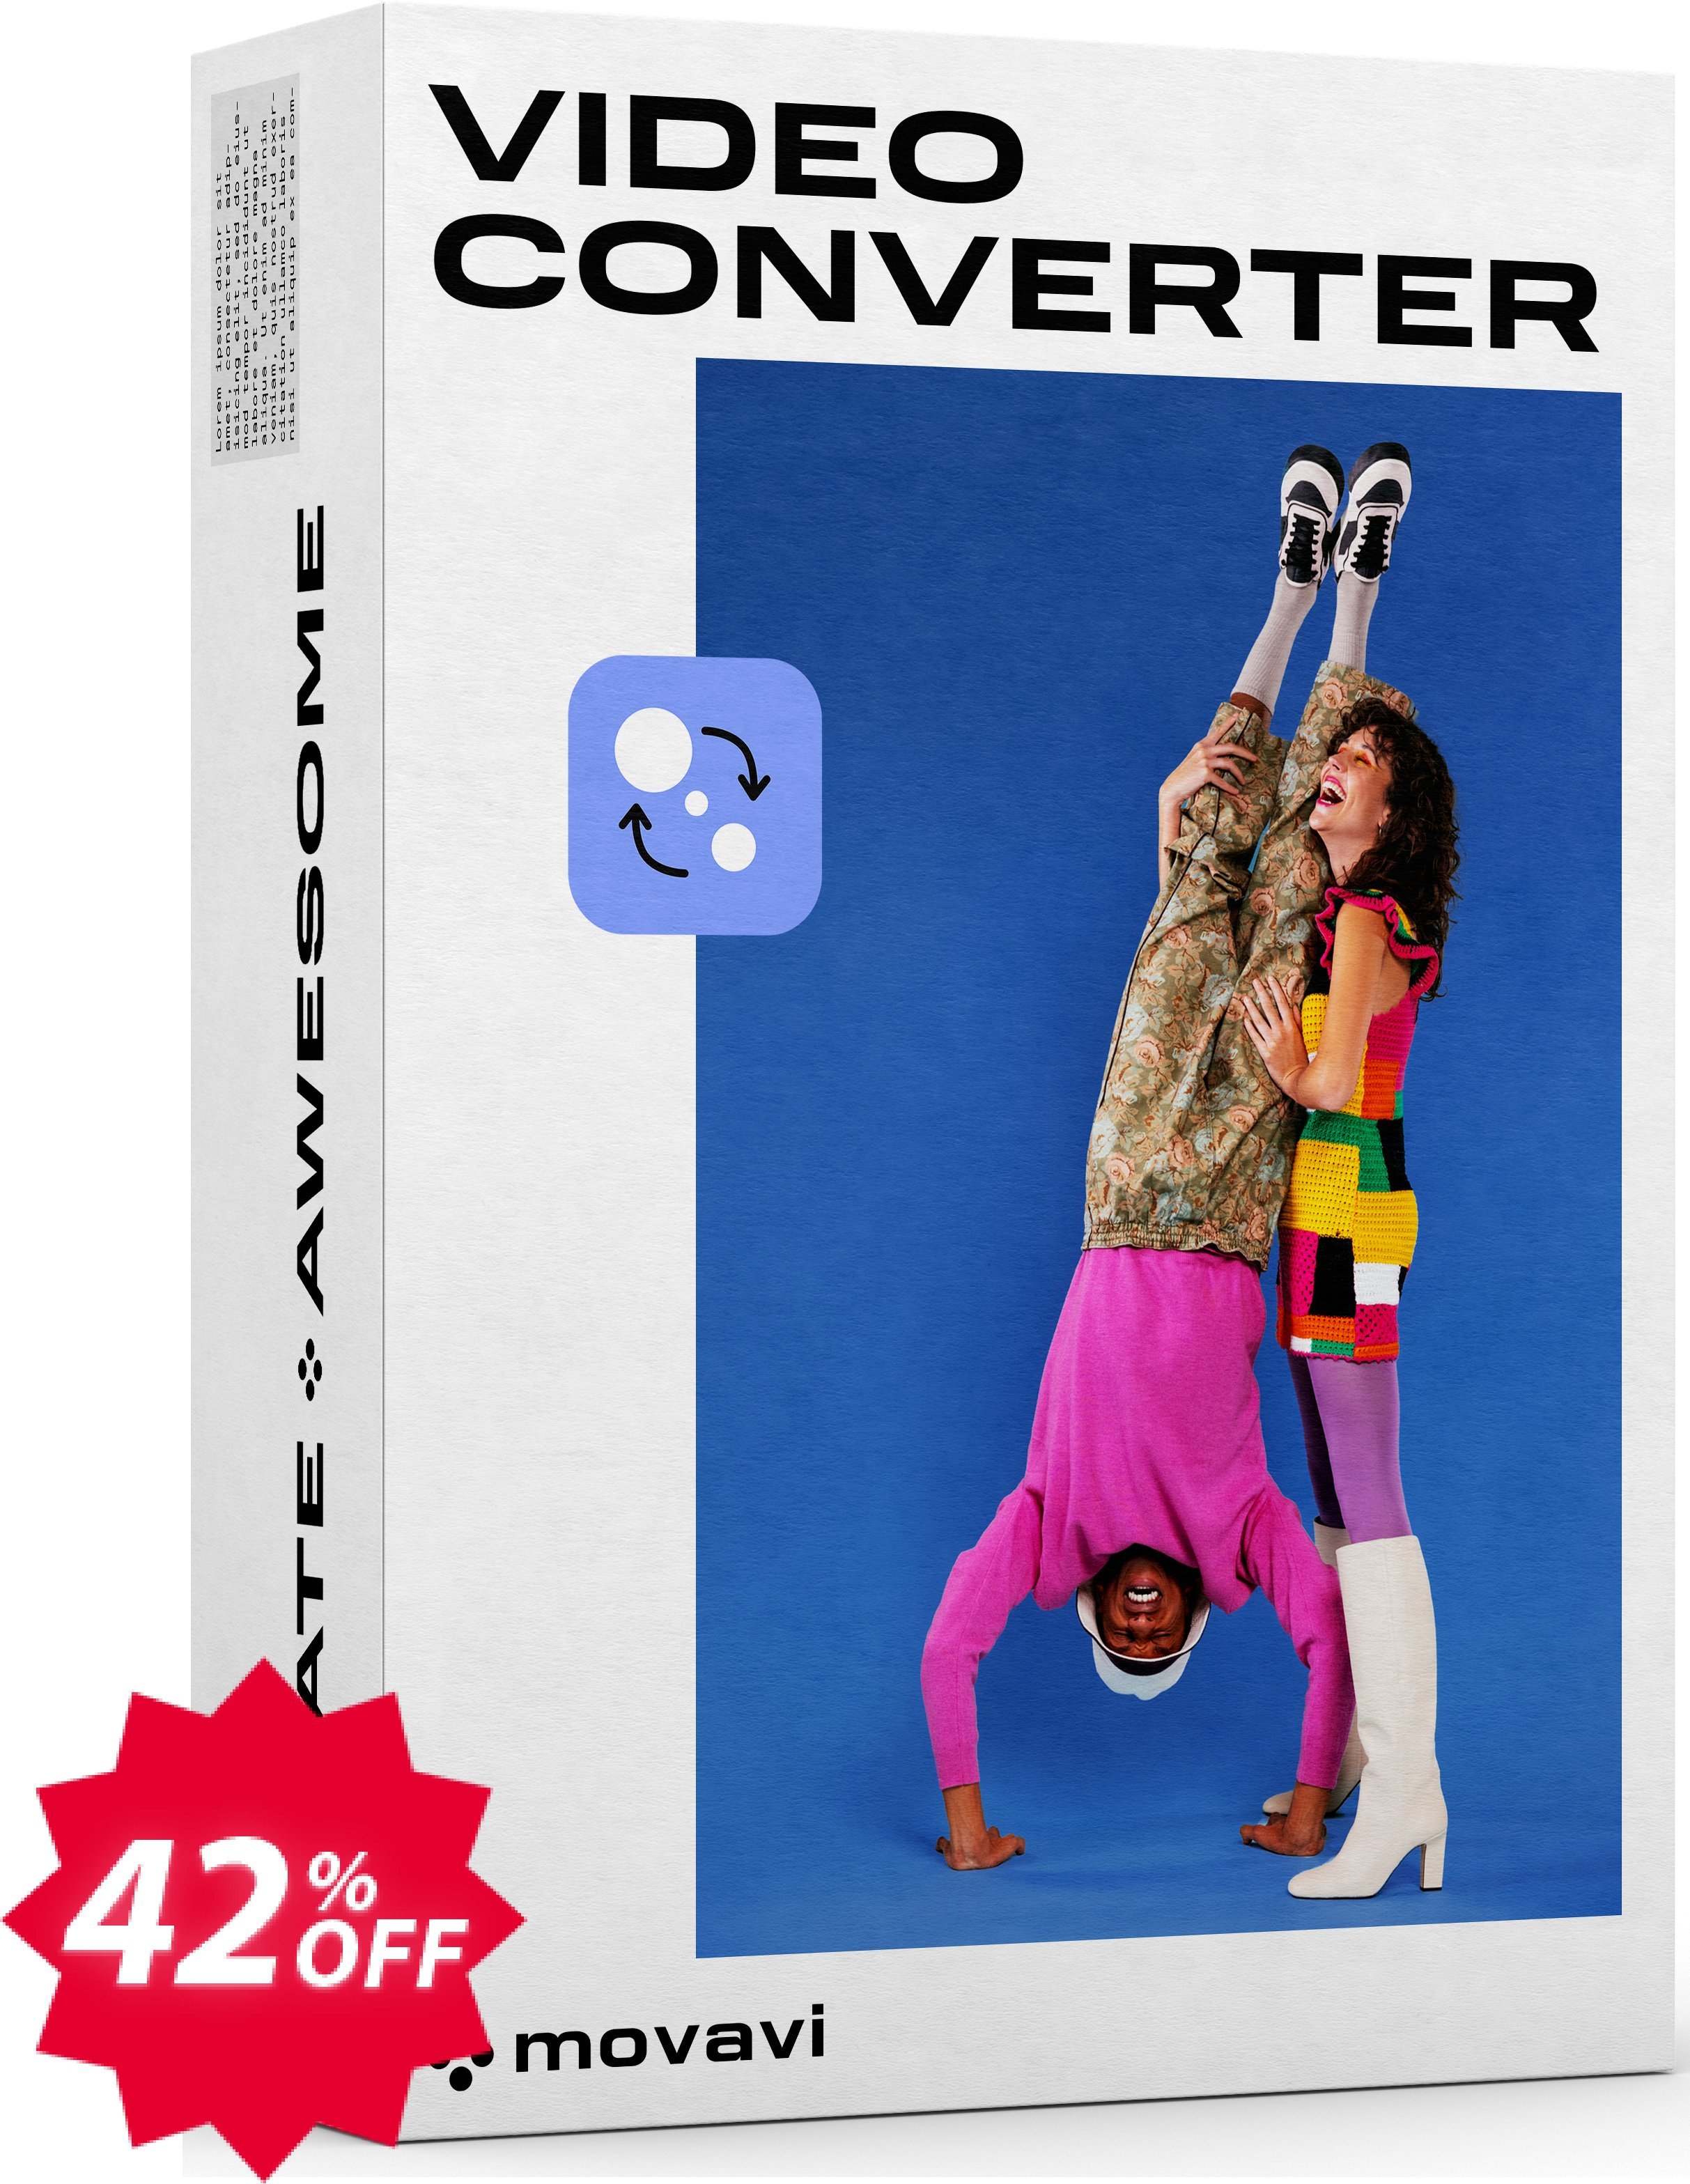 Movavi Video Converter Coupon code 42% discount 